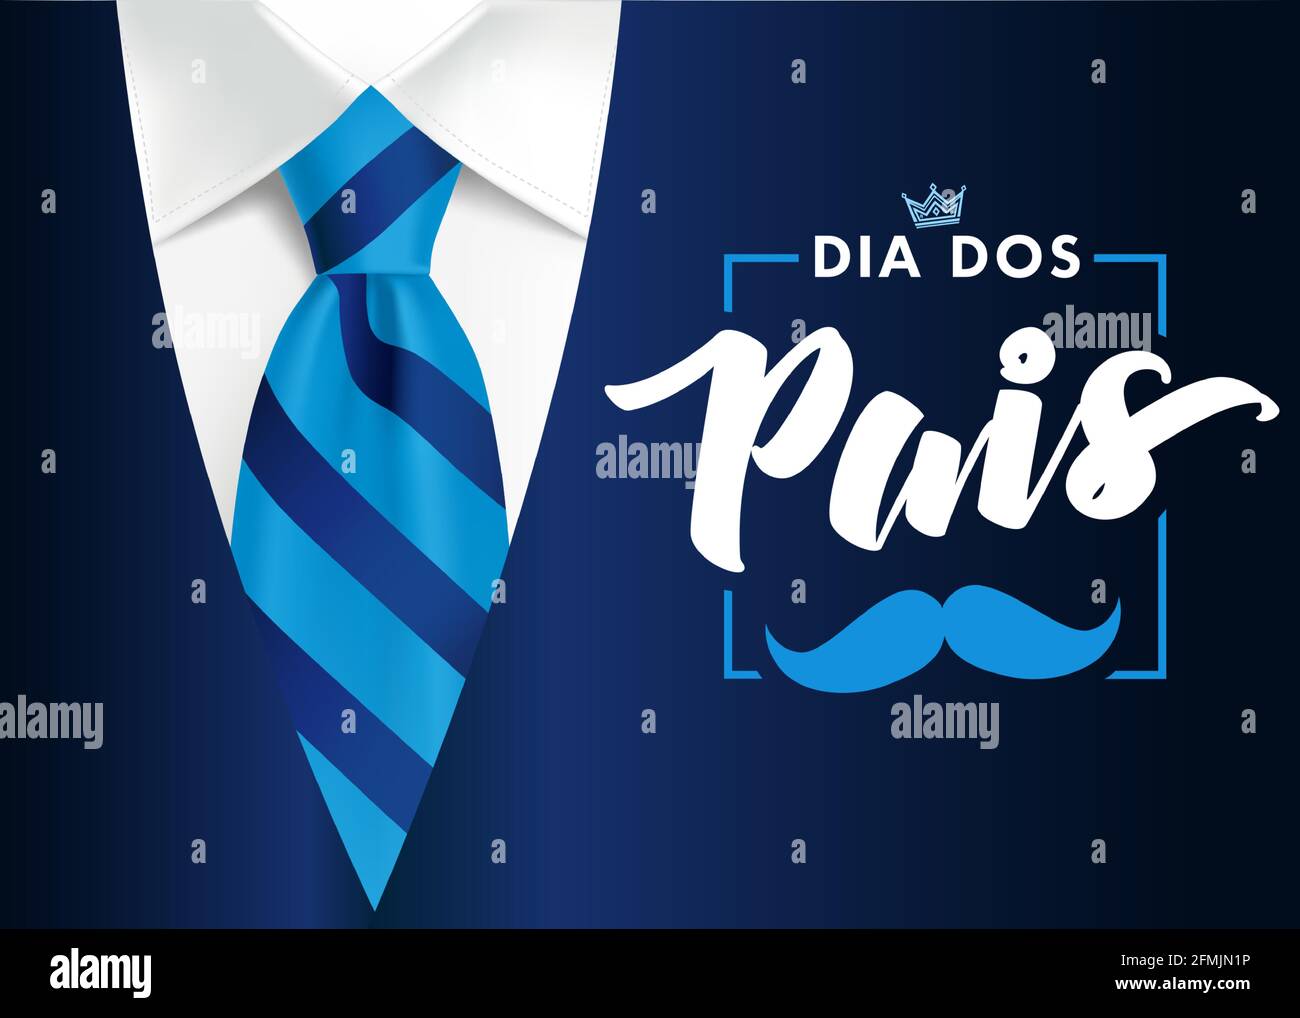 Carte de fête des pères en mots portugais - Dia dos Pais, avec cravate  bleue à rayures. Modèle de promotion et d'achat pour la fête des pères pour  papa sur le bleu